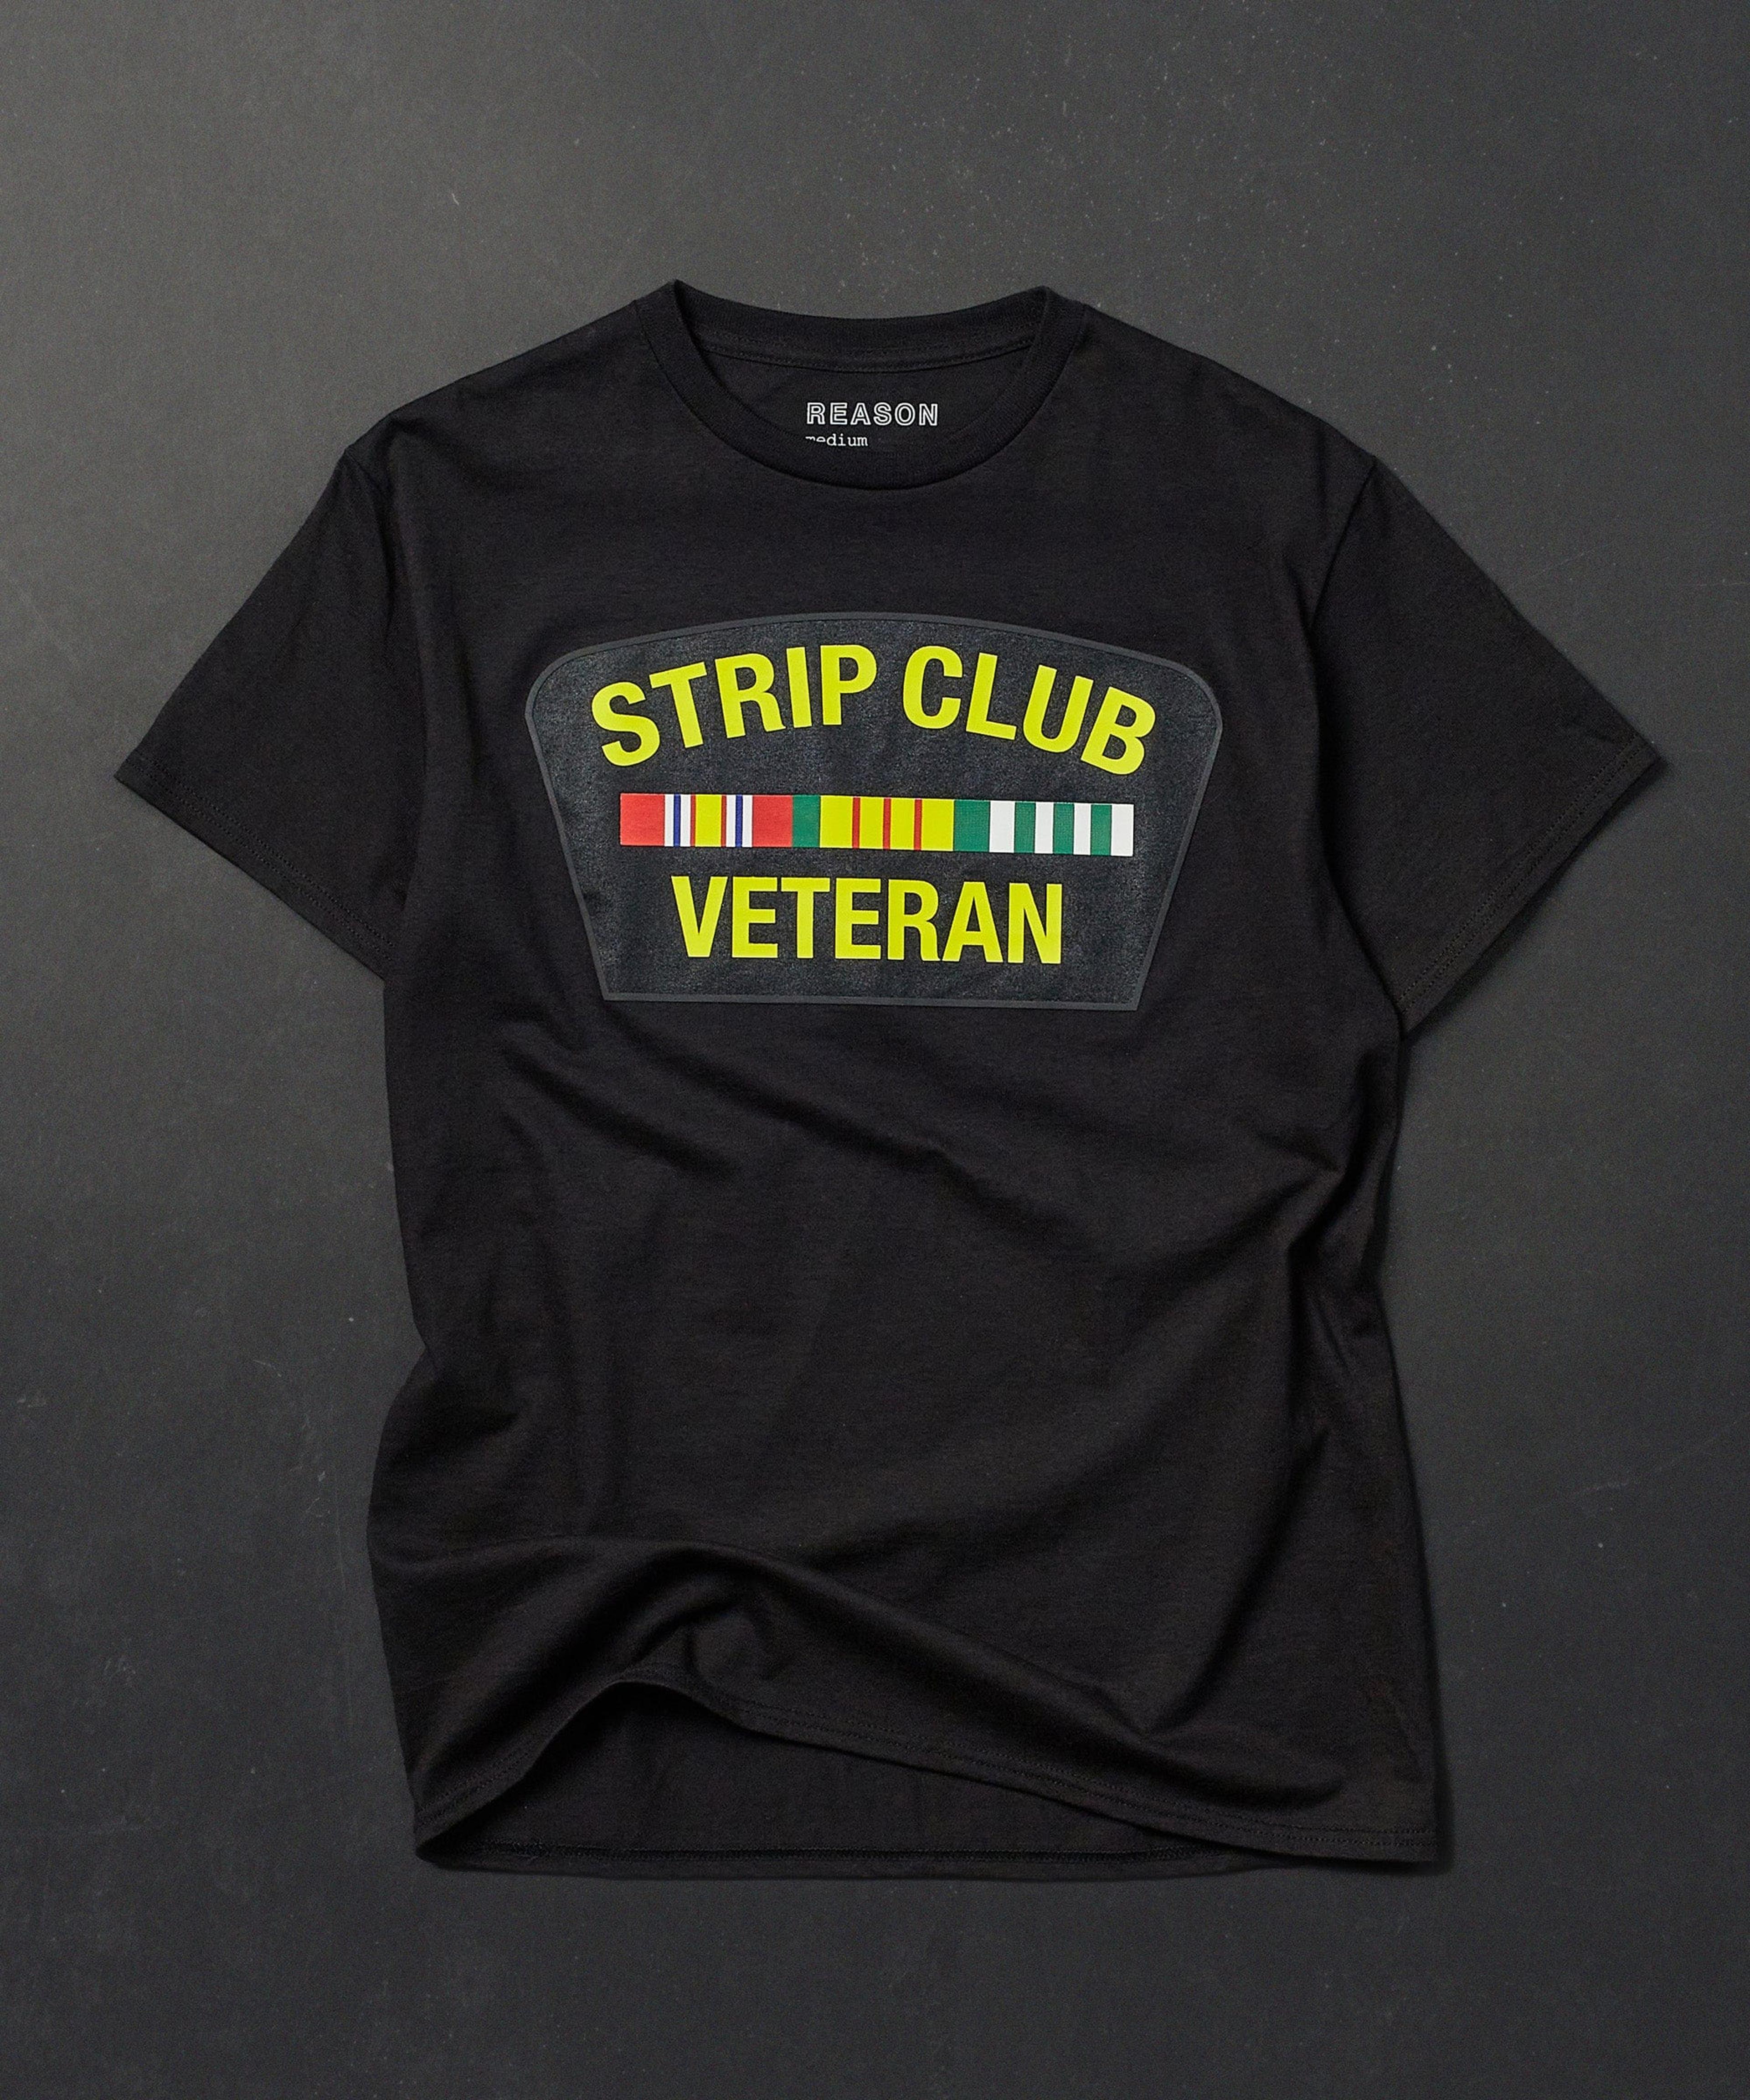 Strip Club Veteran Short Sleeve Tee - Black